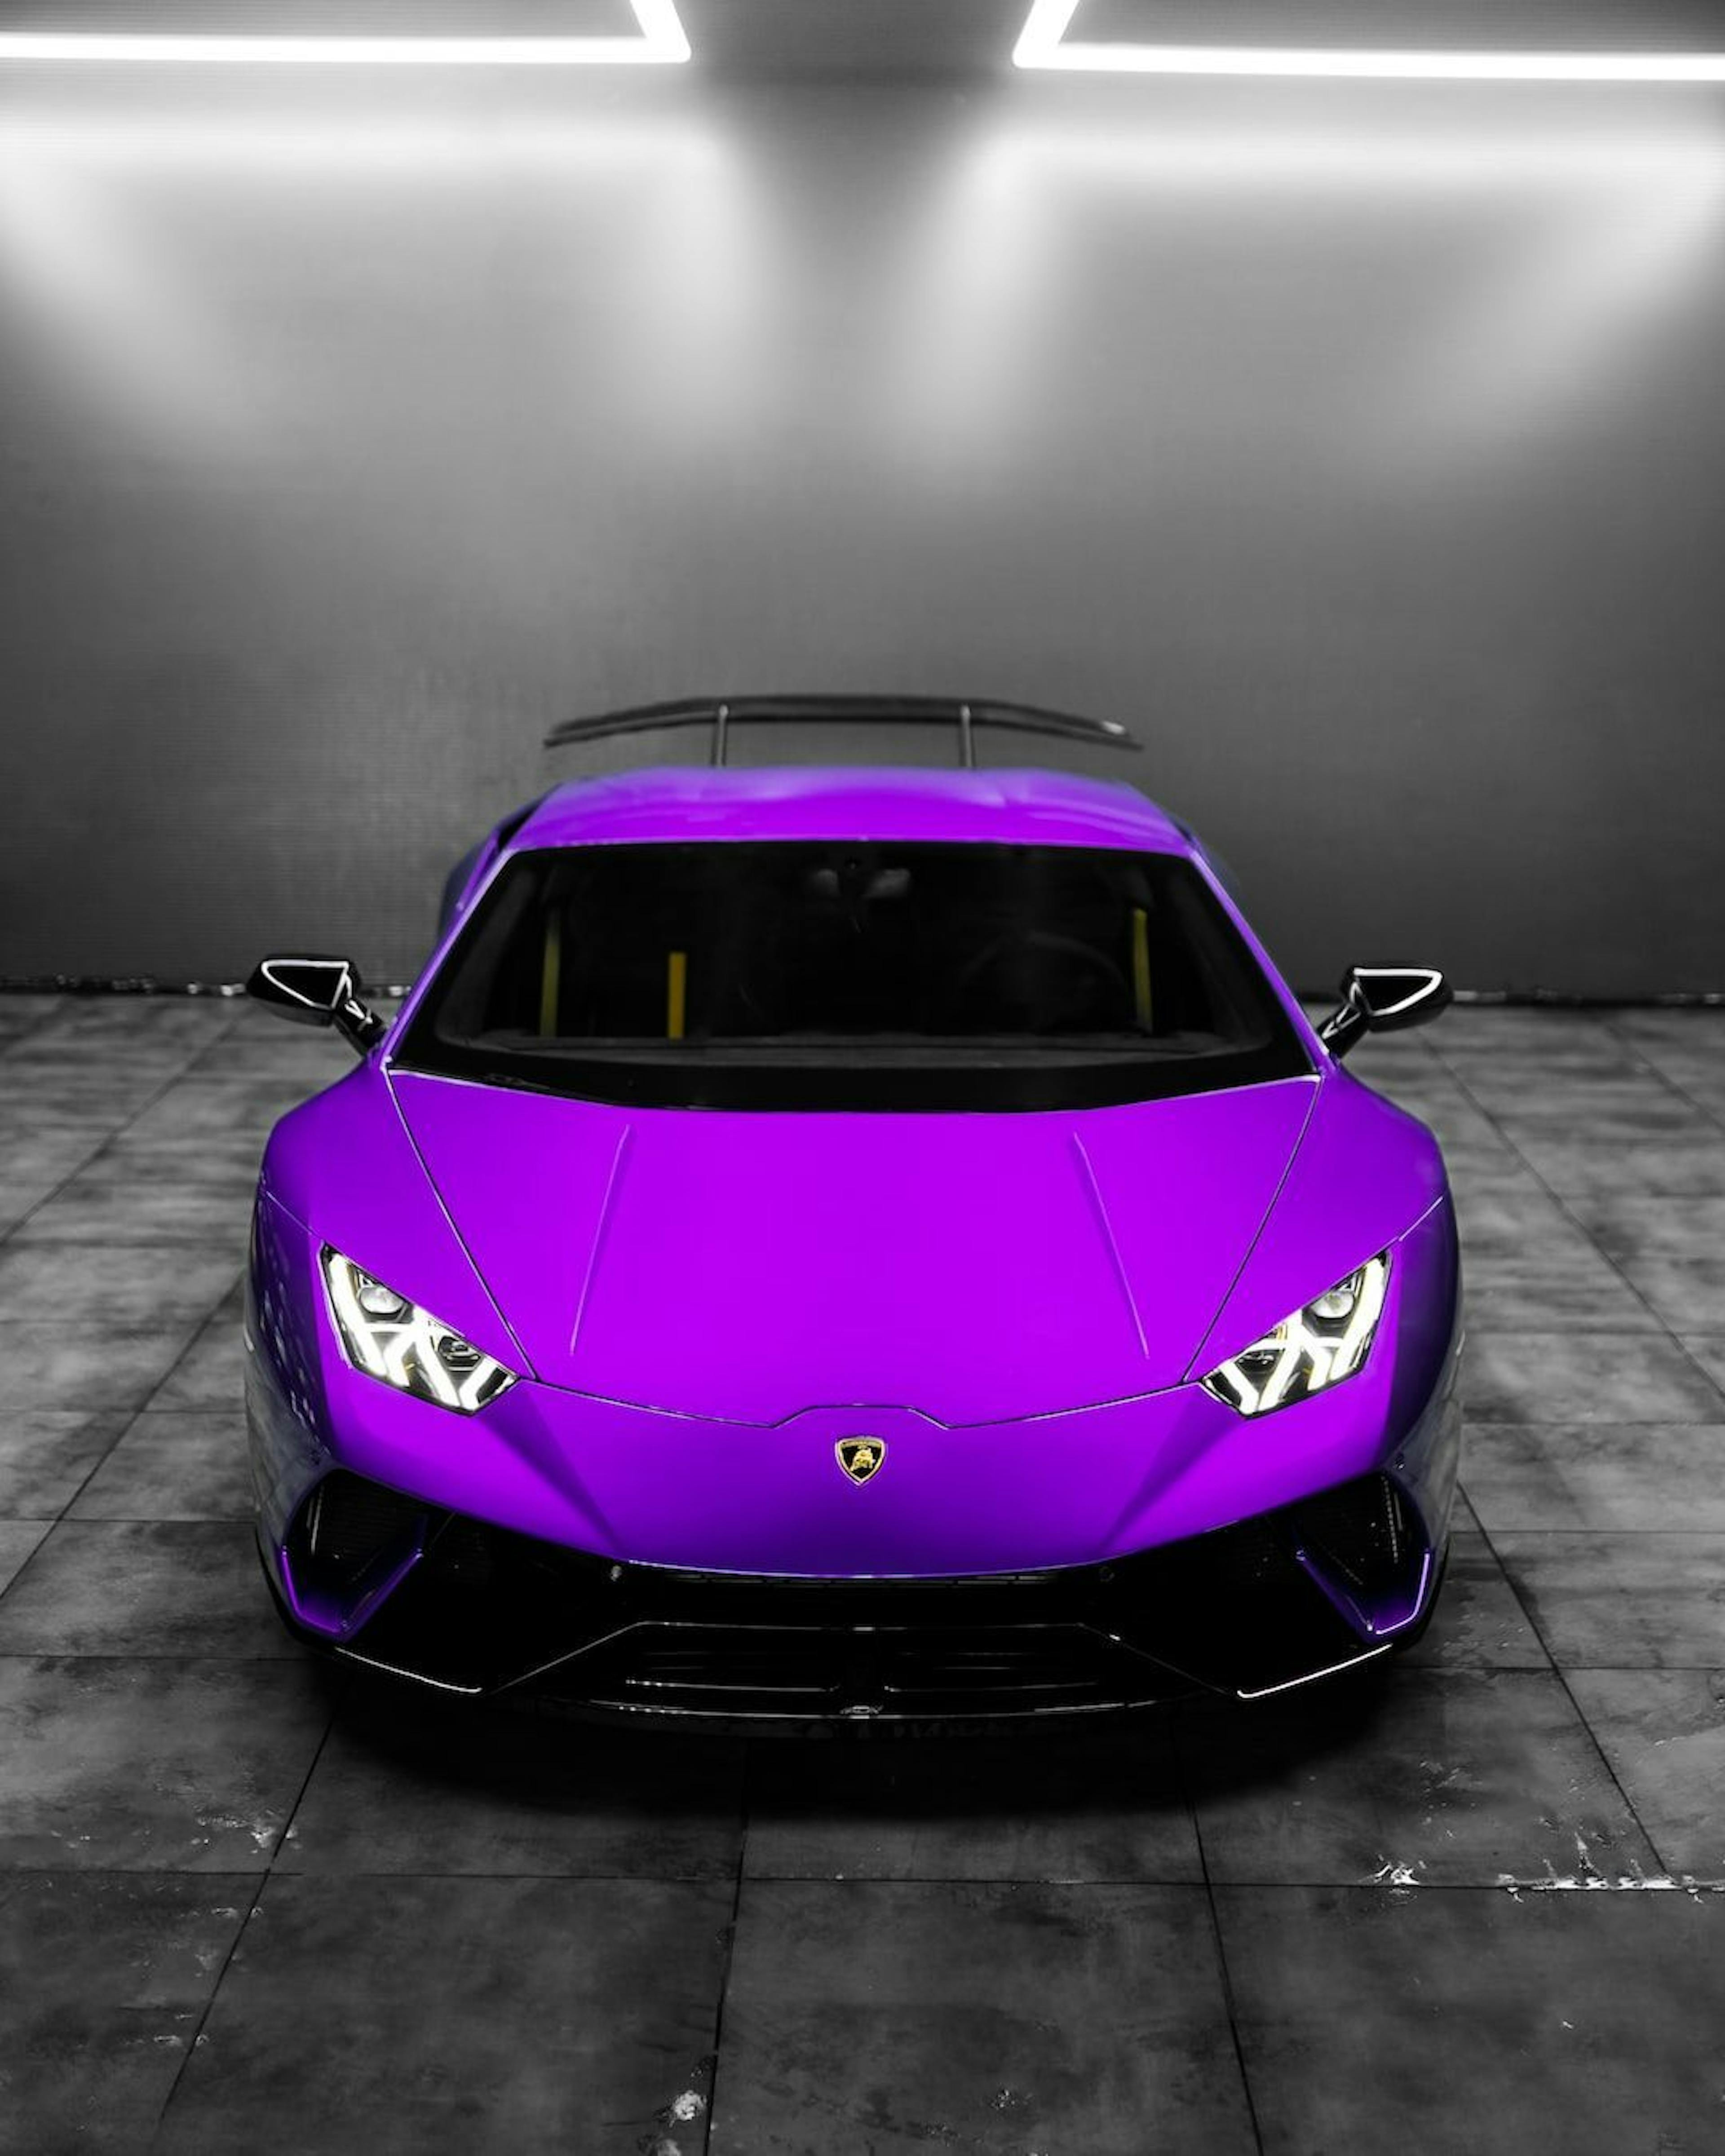 featured image - $PEPE, un Lamborghini morado y más: la historia continúa